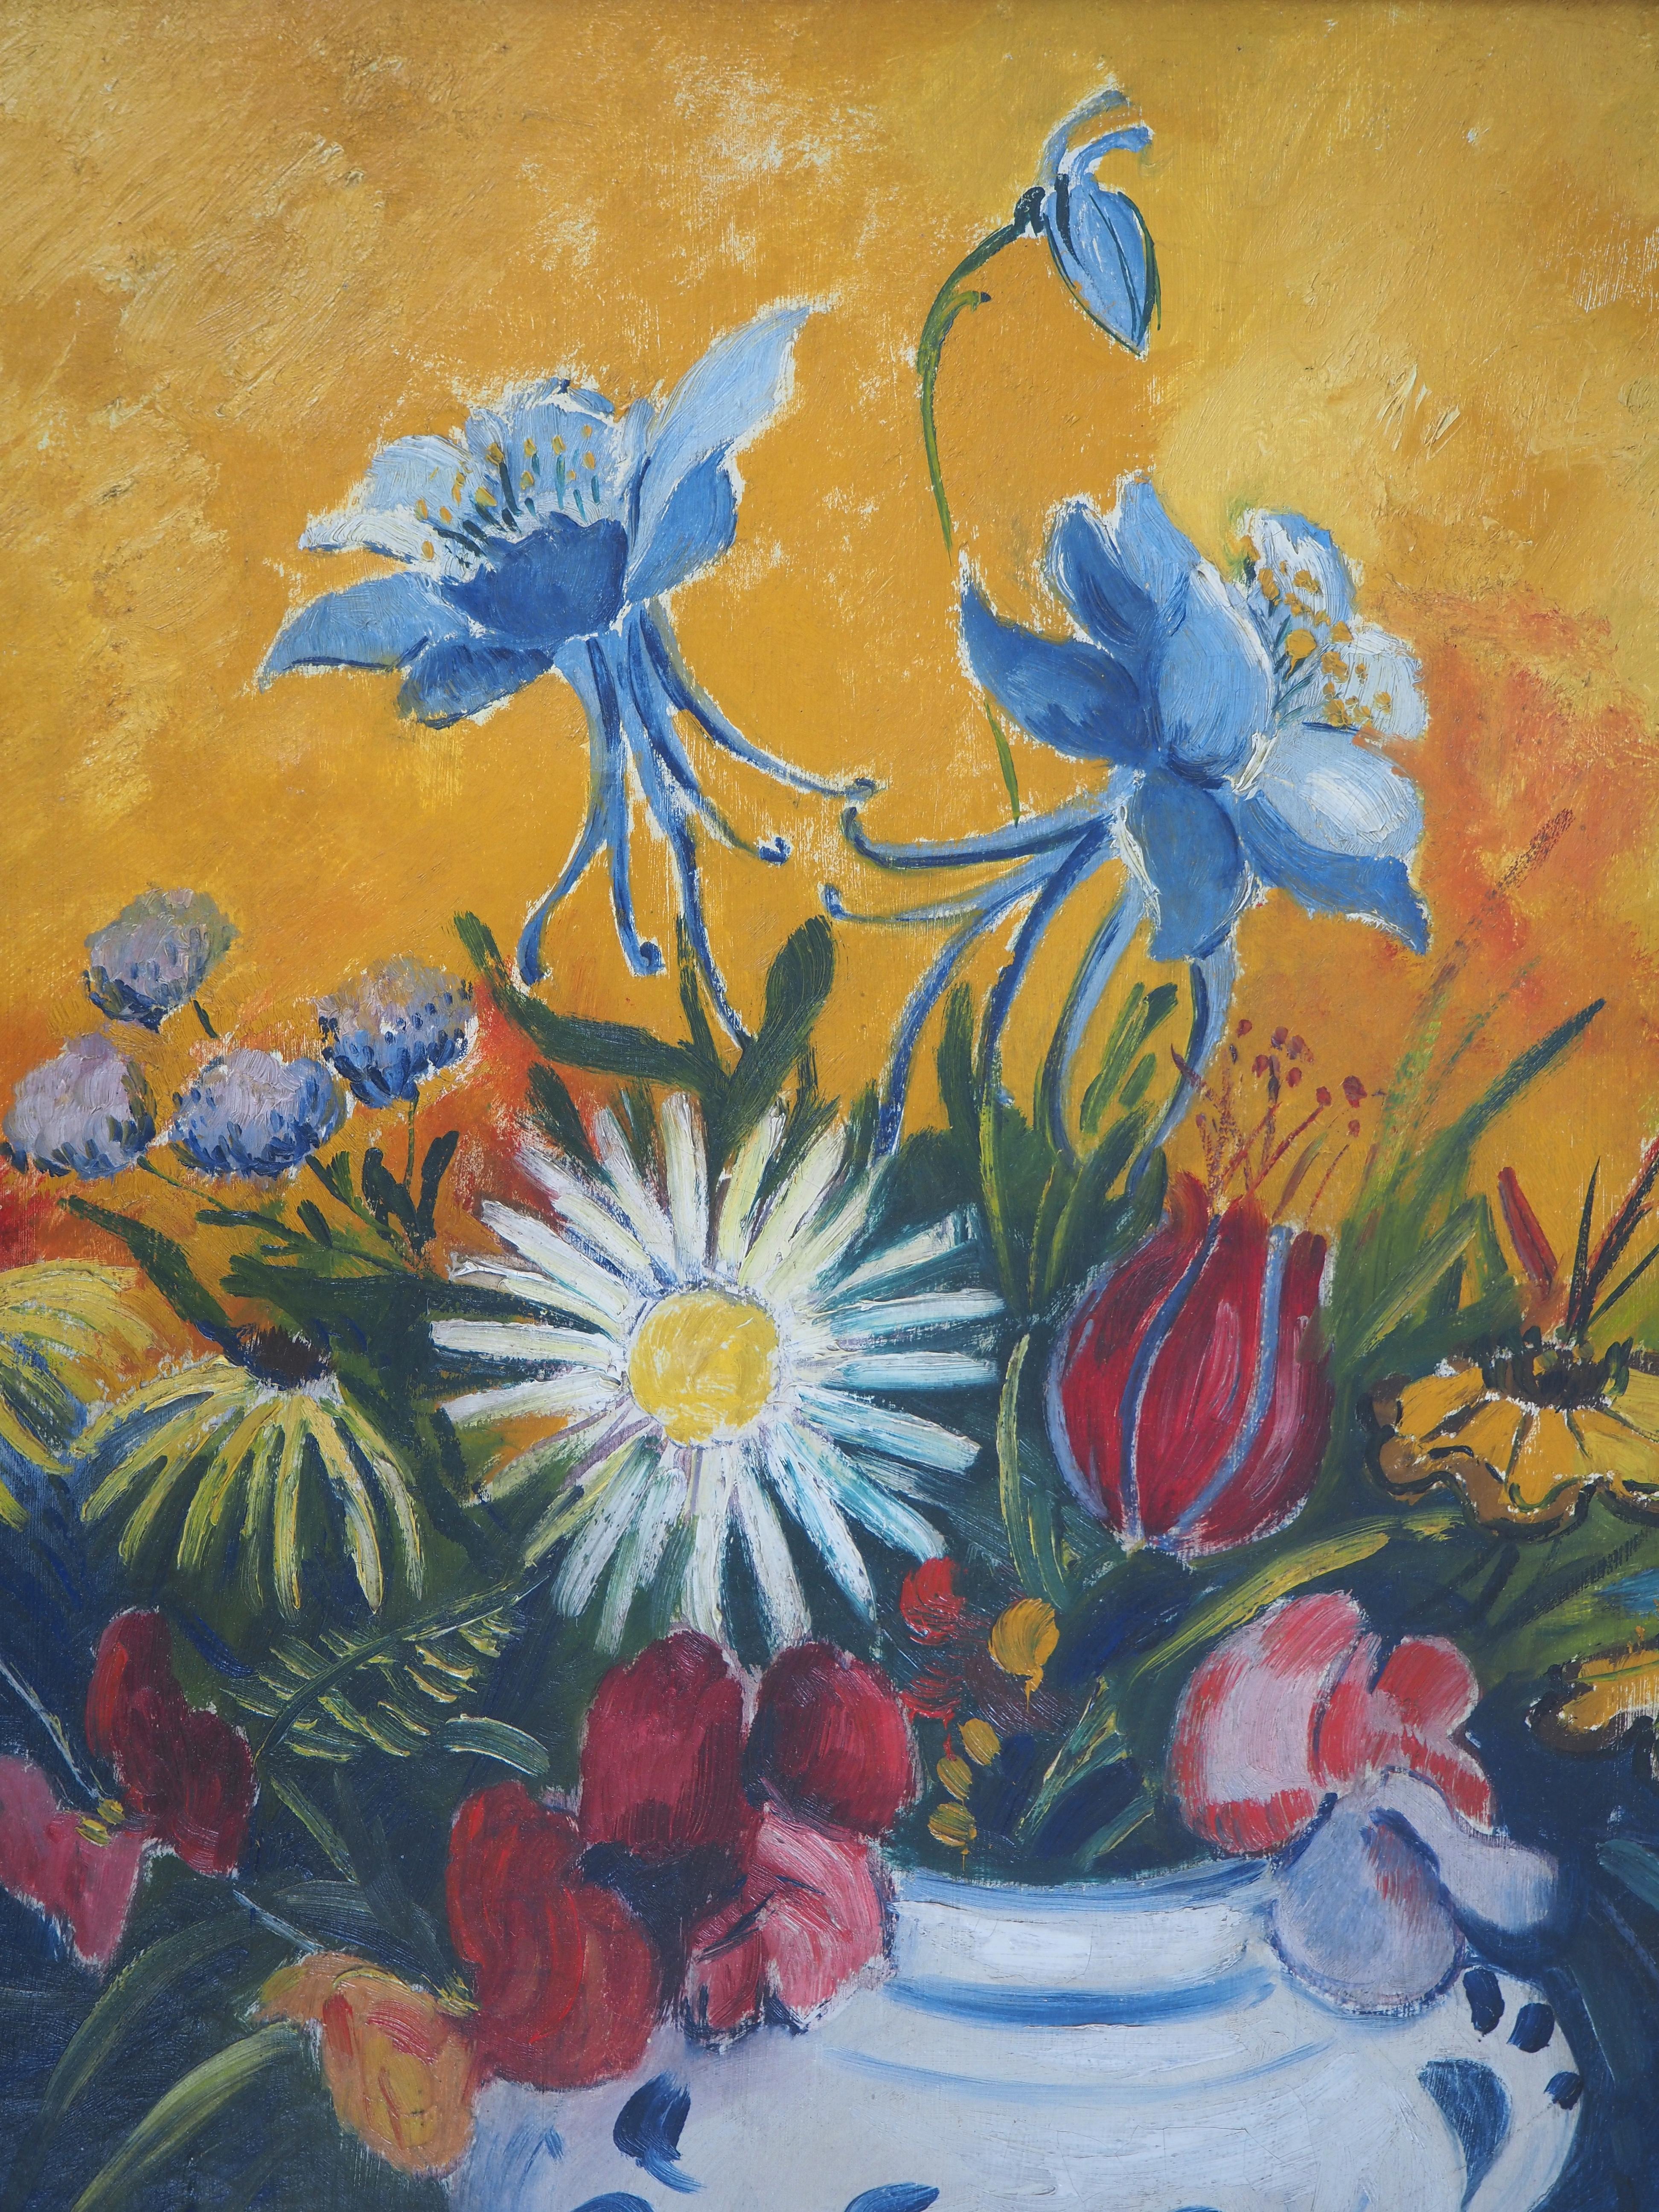 Elisée MACLET (1881-1962)
Hommage à Van Gogh : Fleurs sur fond jaune c. 1929

Huile originale sur toile
Signé en bas à droite
Sur toile 55 x 46 cm (c. 22 x 18 in) 
Présentée dans un cadre doré 64 x 55 cm (c. 26 x 22 in)

Très bon état, légers